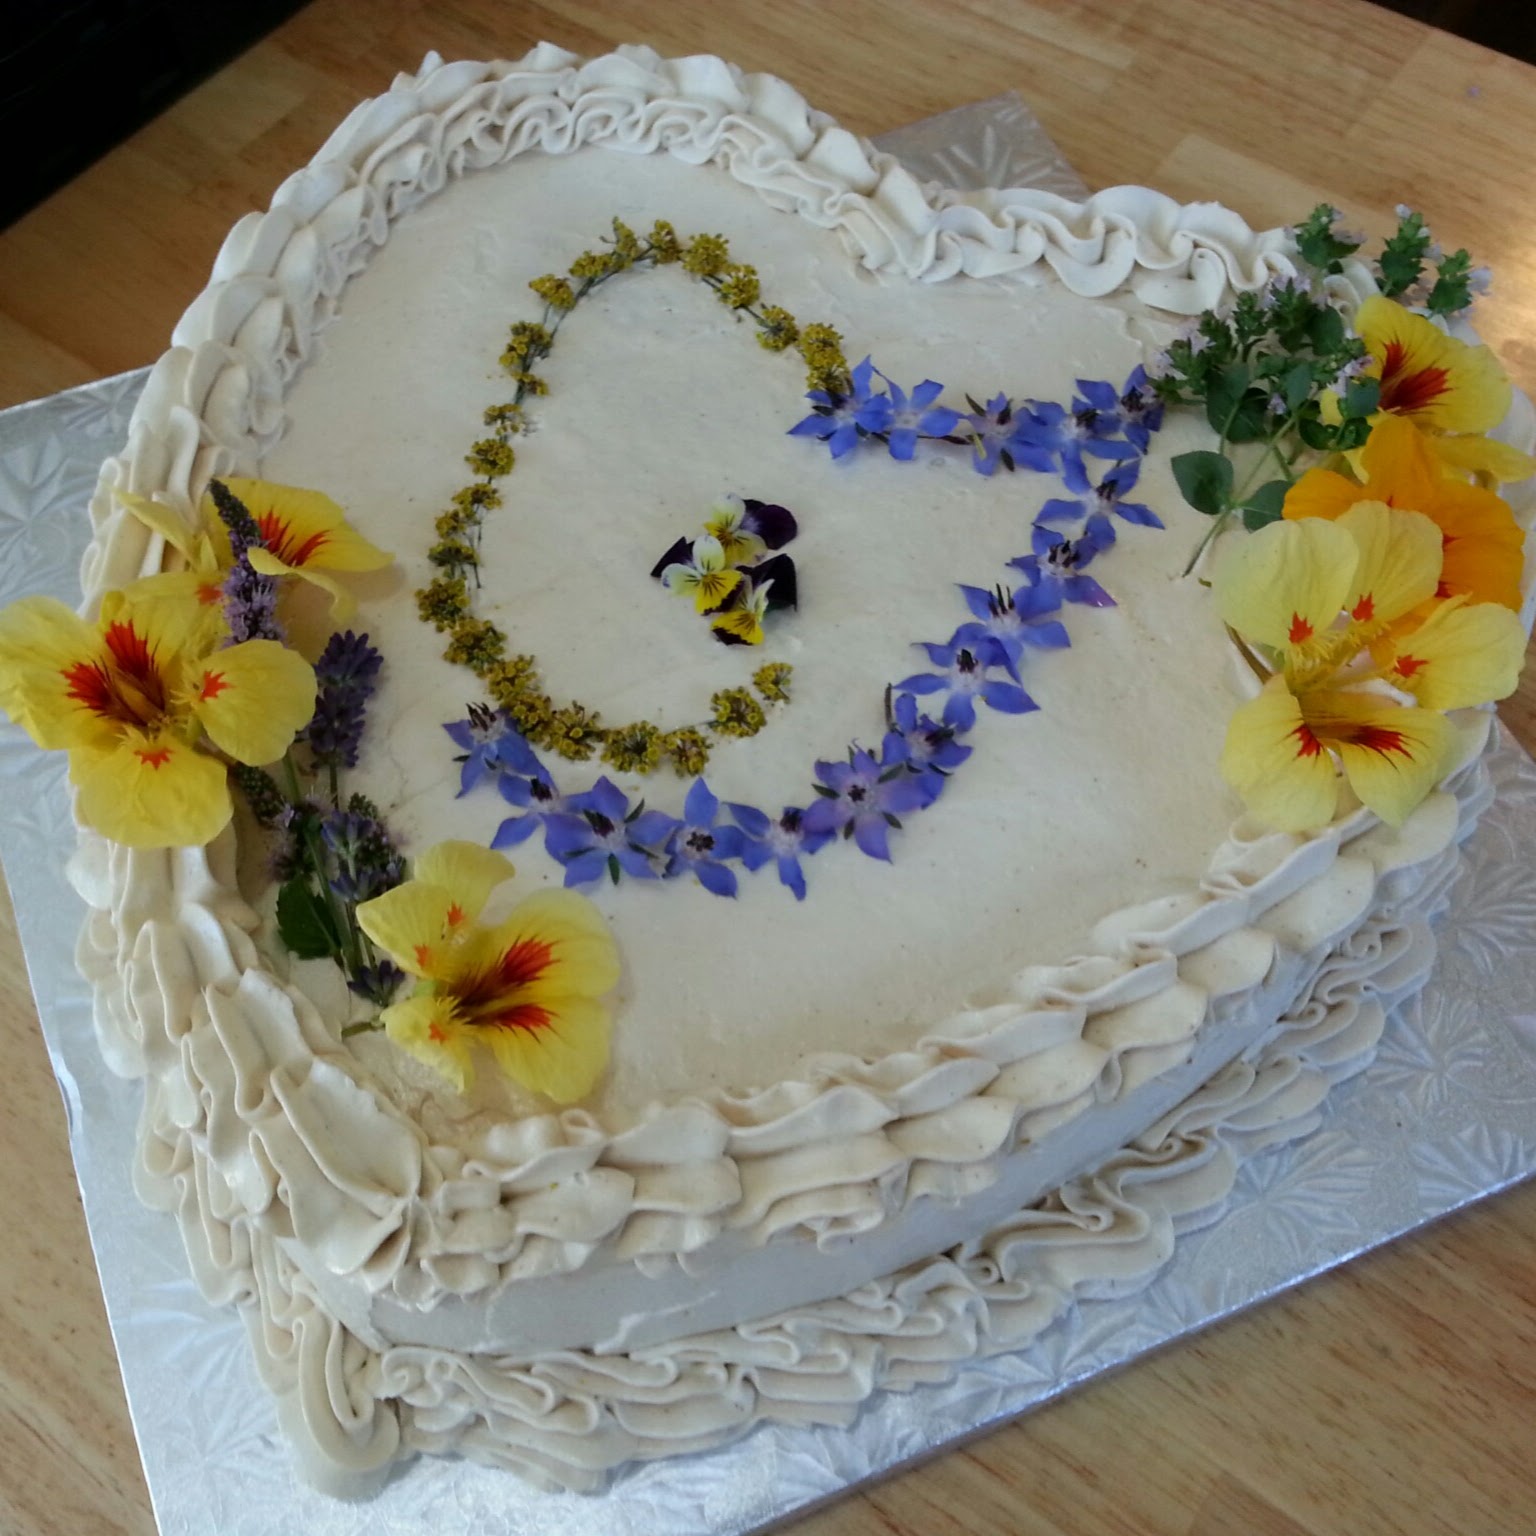 Sugar-free, vegan wedding cake